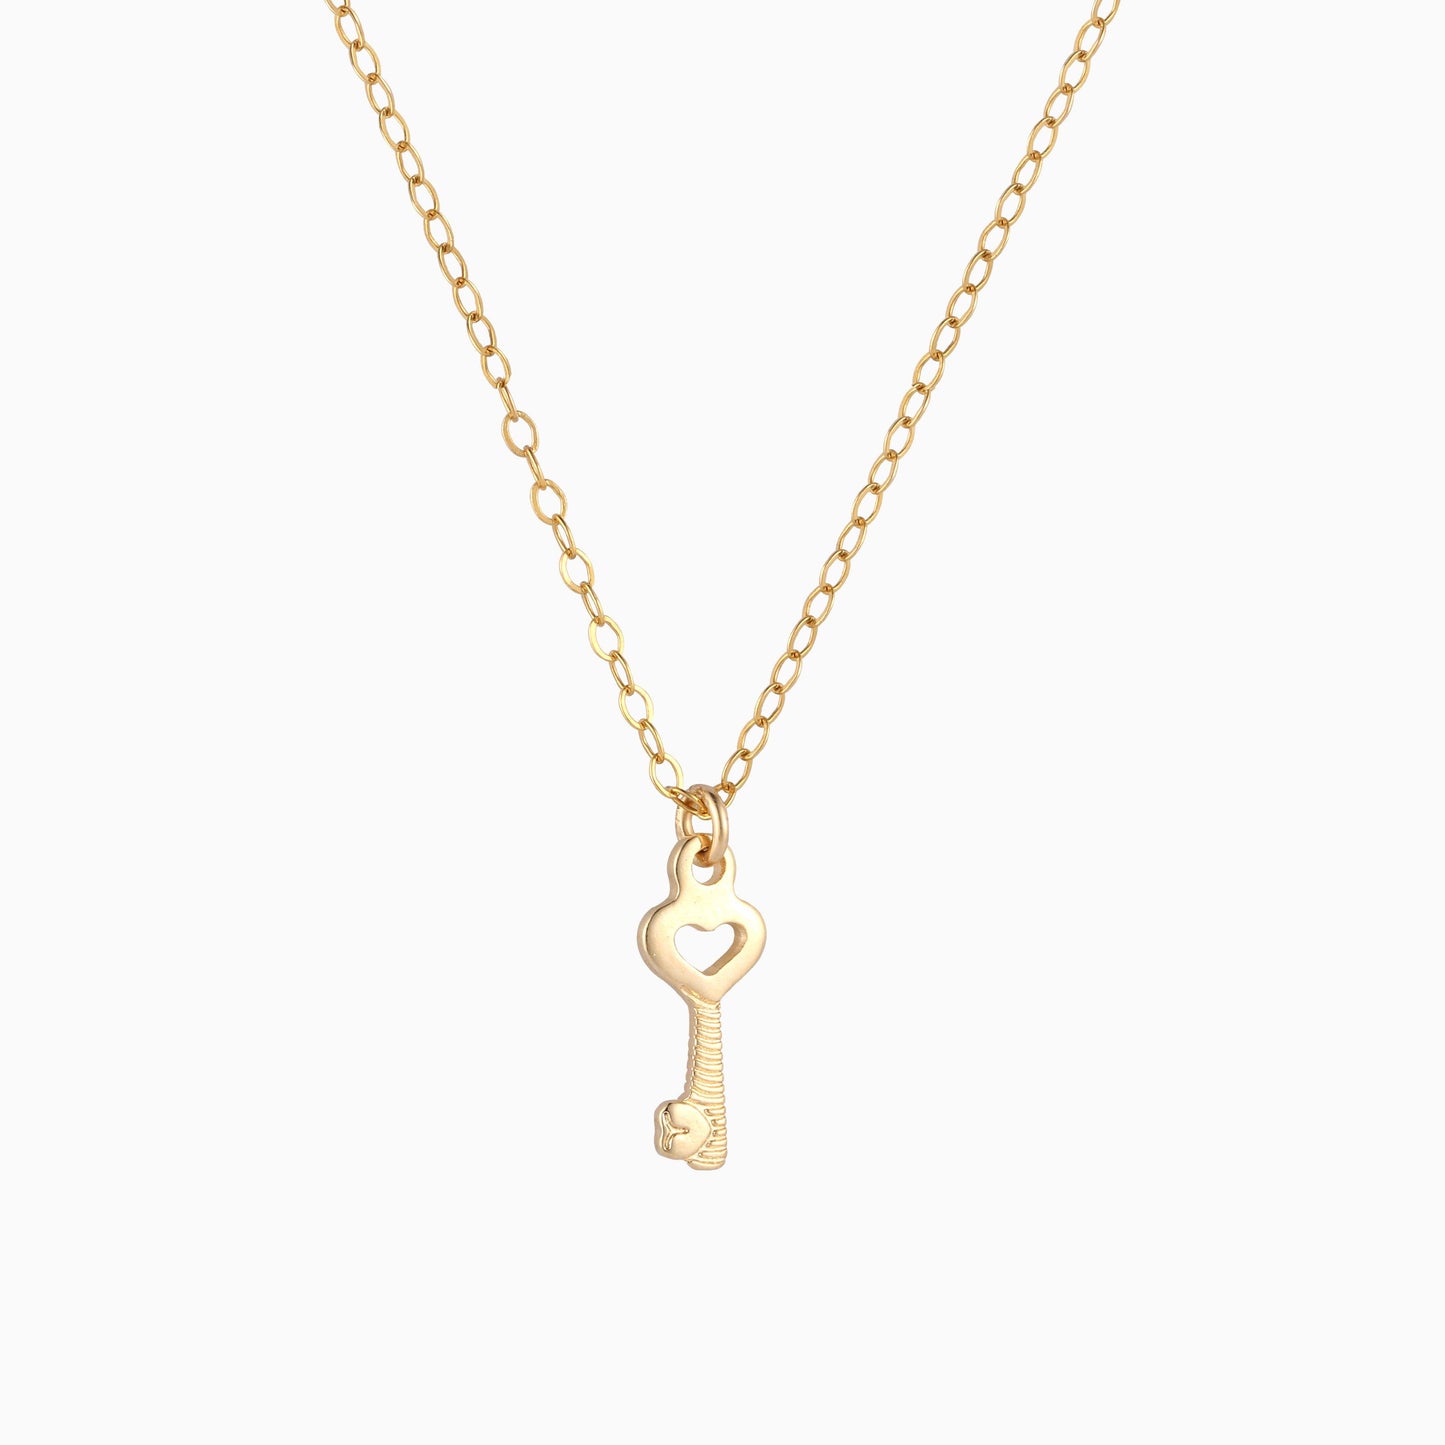 Dainty Heart Key Necklace - 14K Gold Filled - Studdedheartz